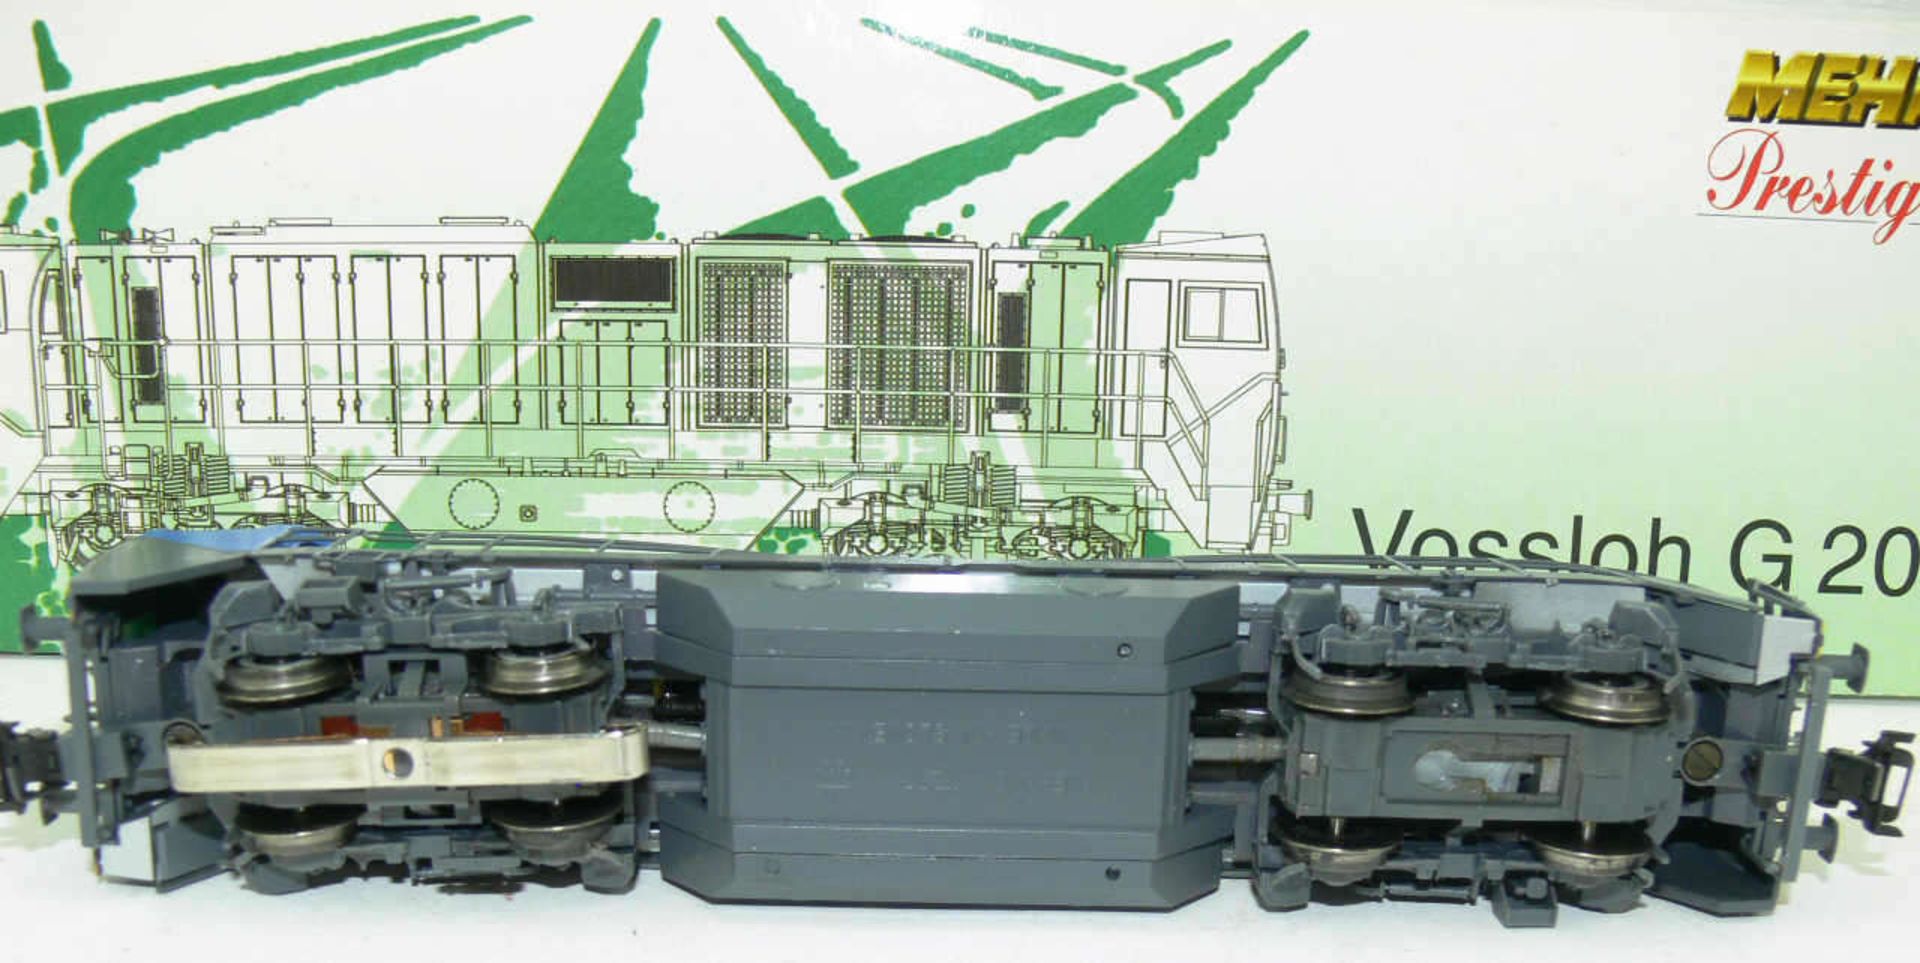 Mehano T 277 Vissloh G 2000. Diesellokomotive. Wechselstrom. Neuwertig in OVP. - Bild 2 aus 2